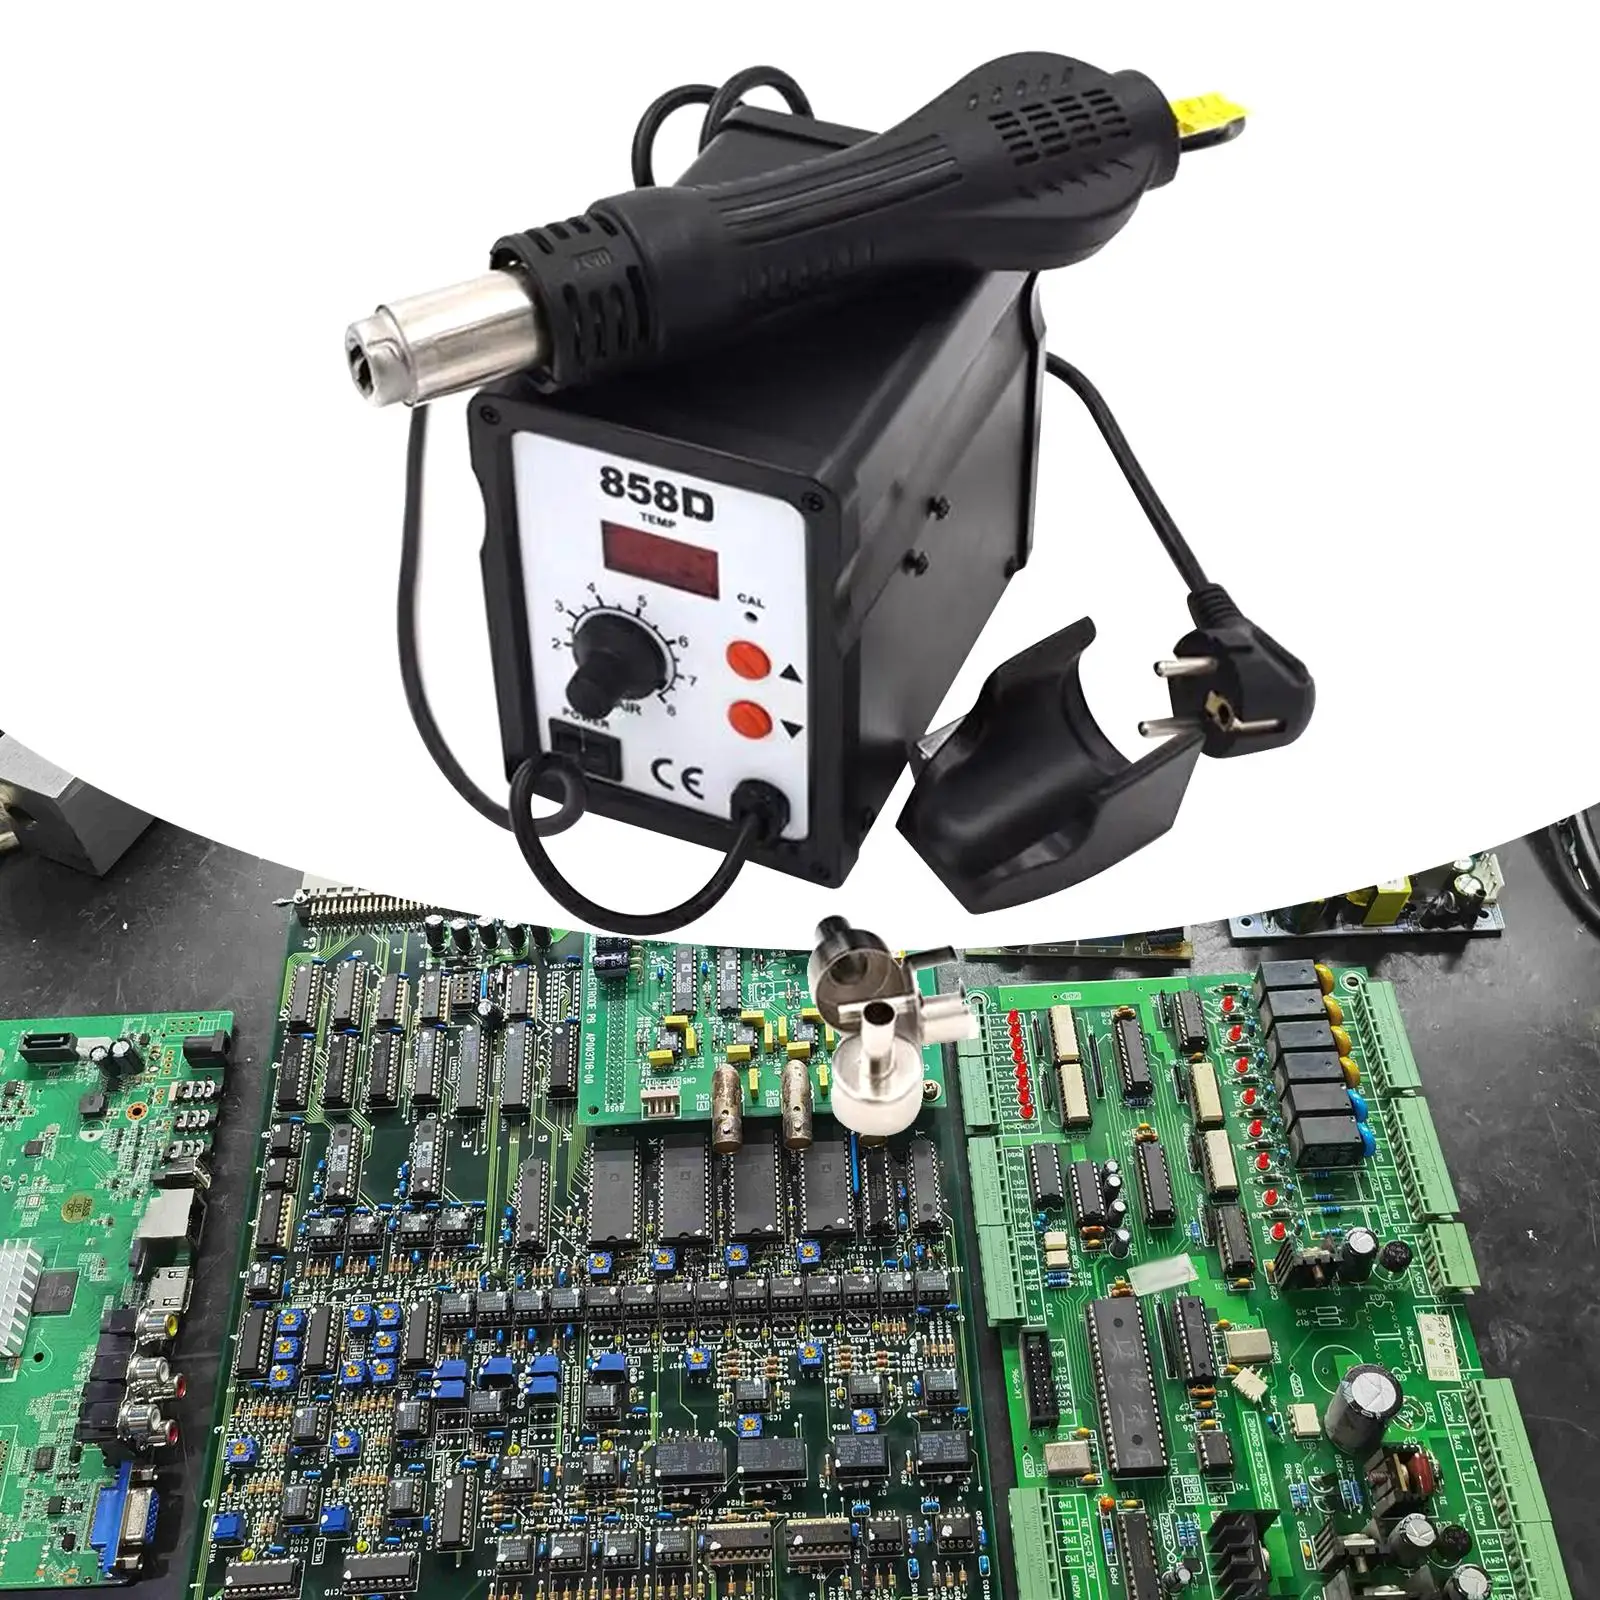 Hot Air Reflow Adjustable Soldering Replacing Nozzle Fast Heating Adjustable 858D Hot Air Reworks Station for Repairing Phone